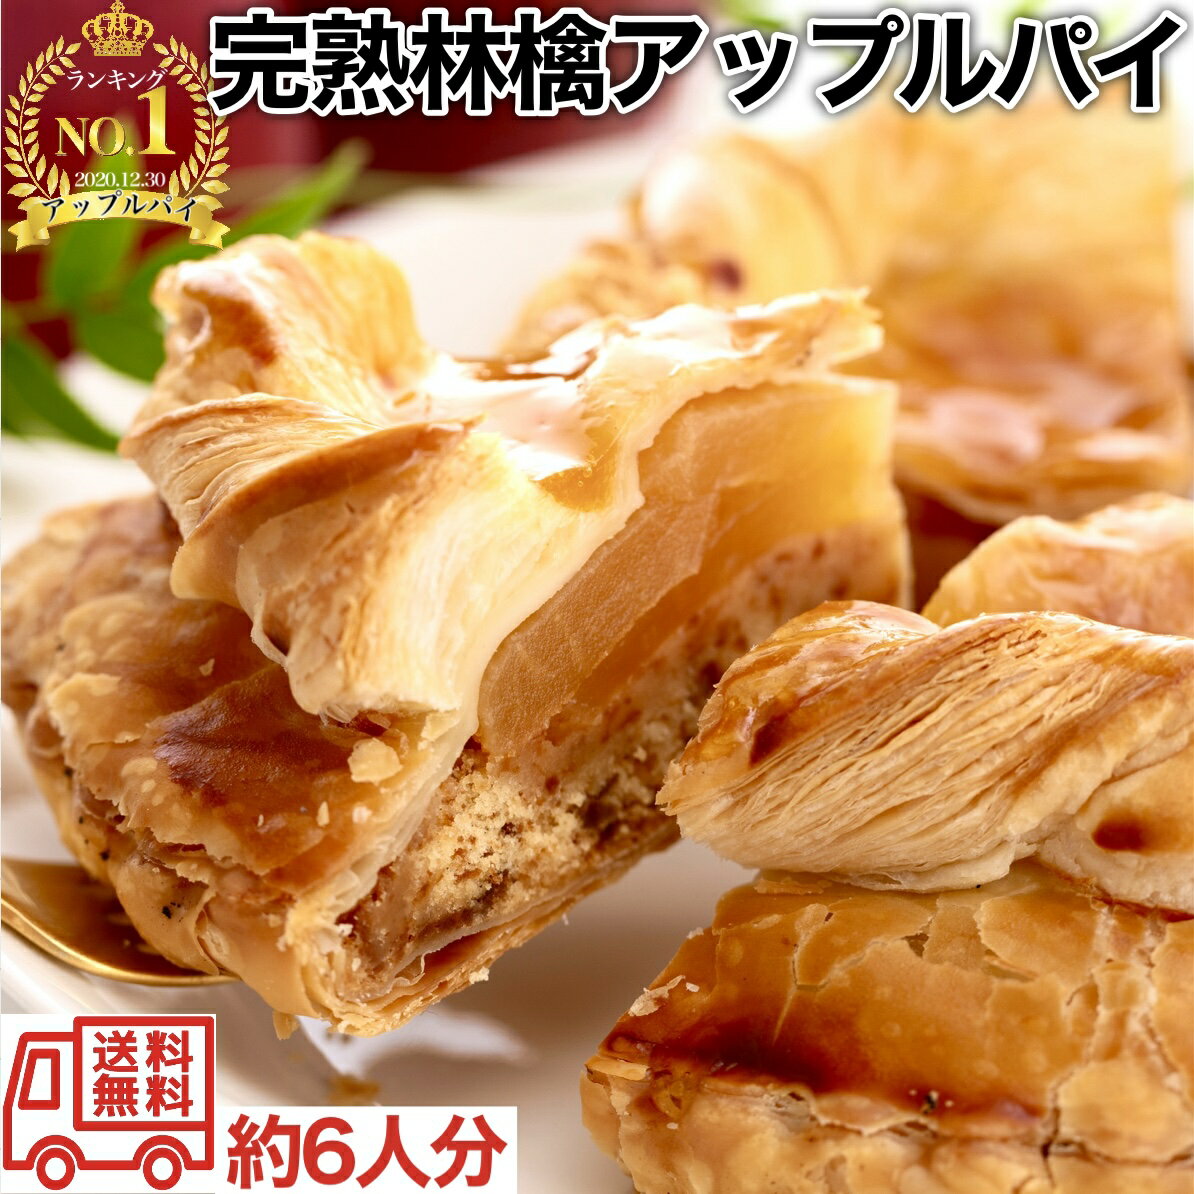 【埼玉県のお土産】クッキー・焼き菓子